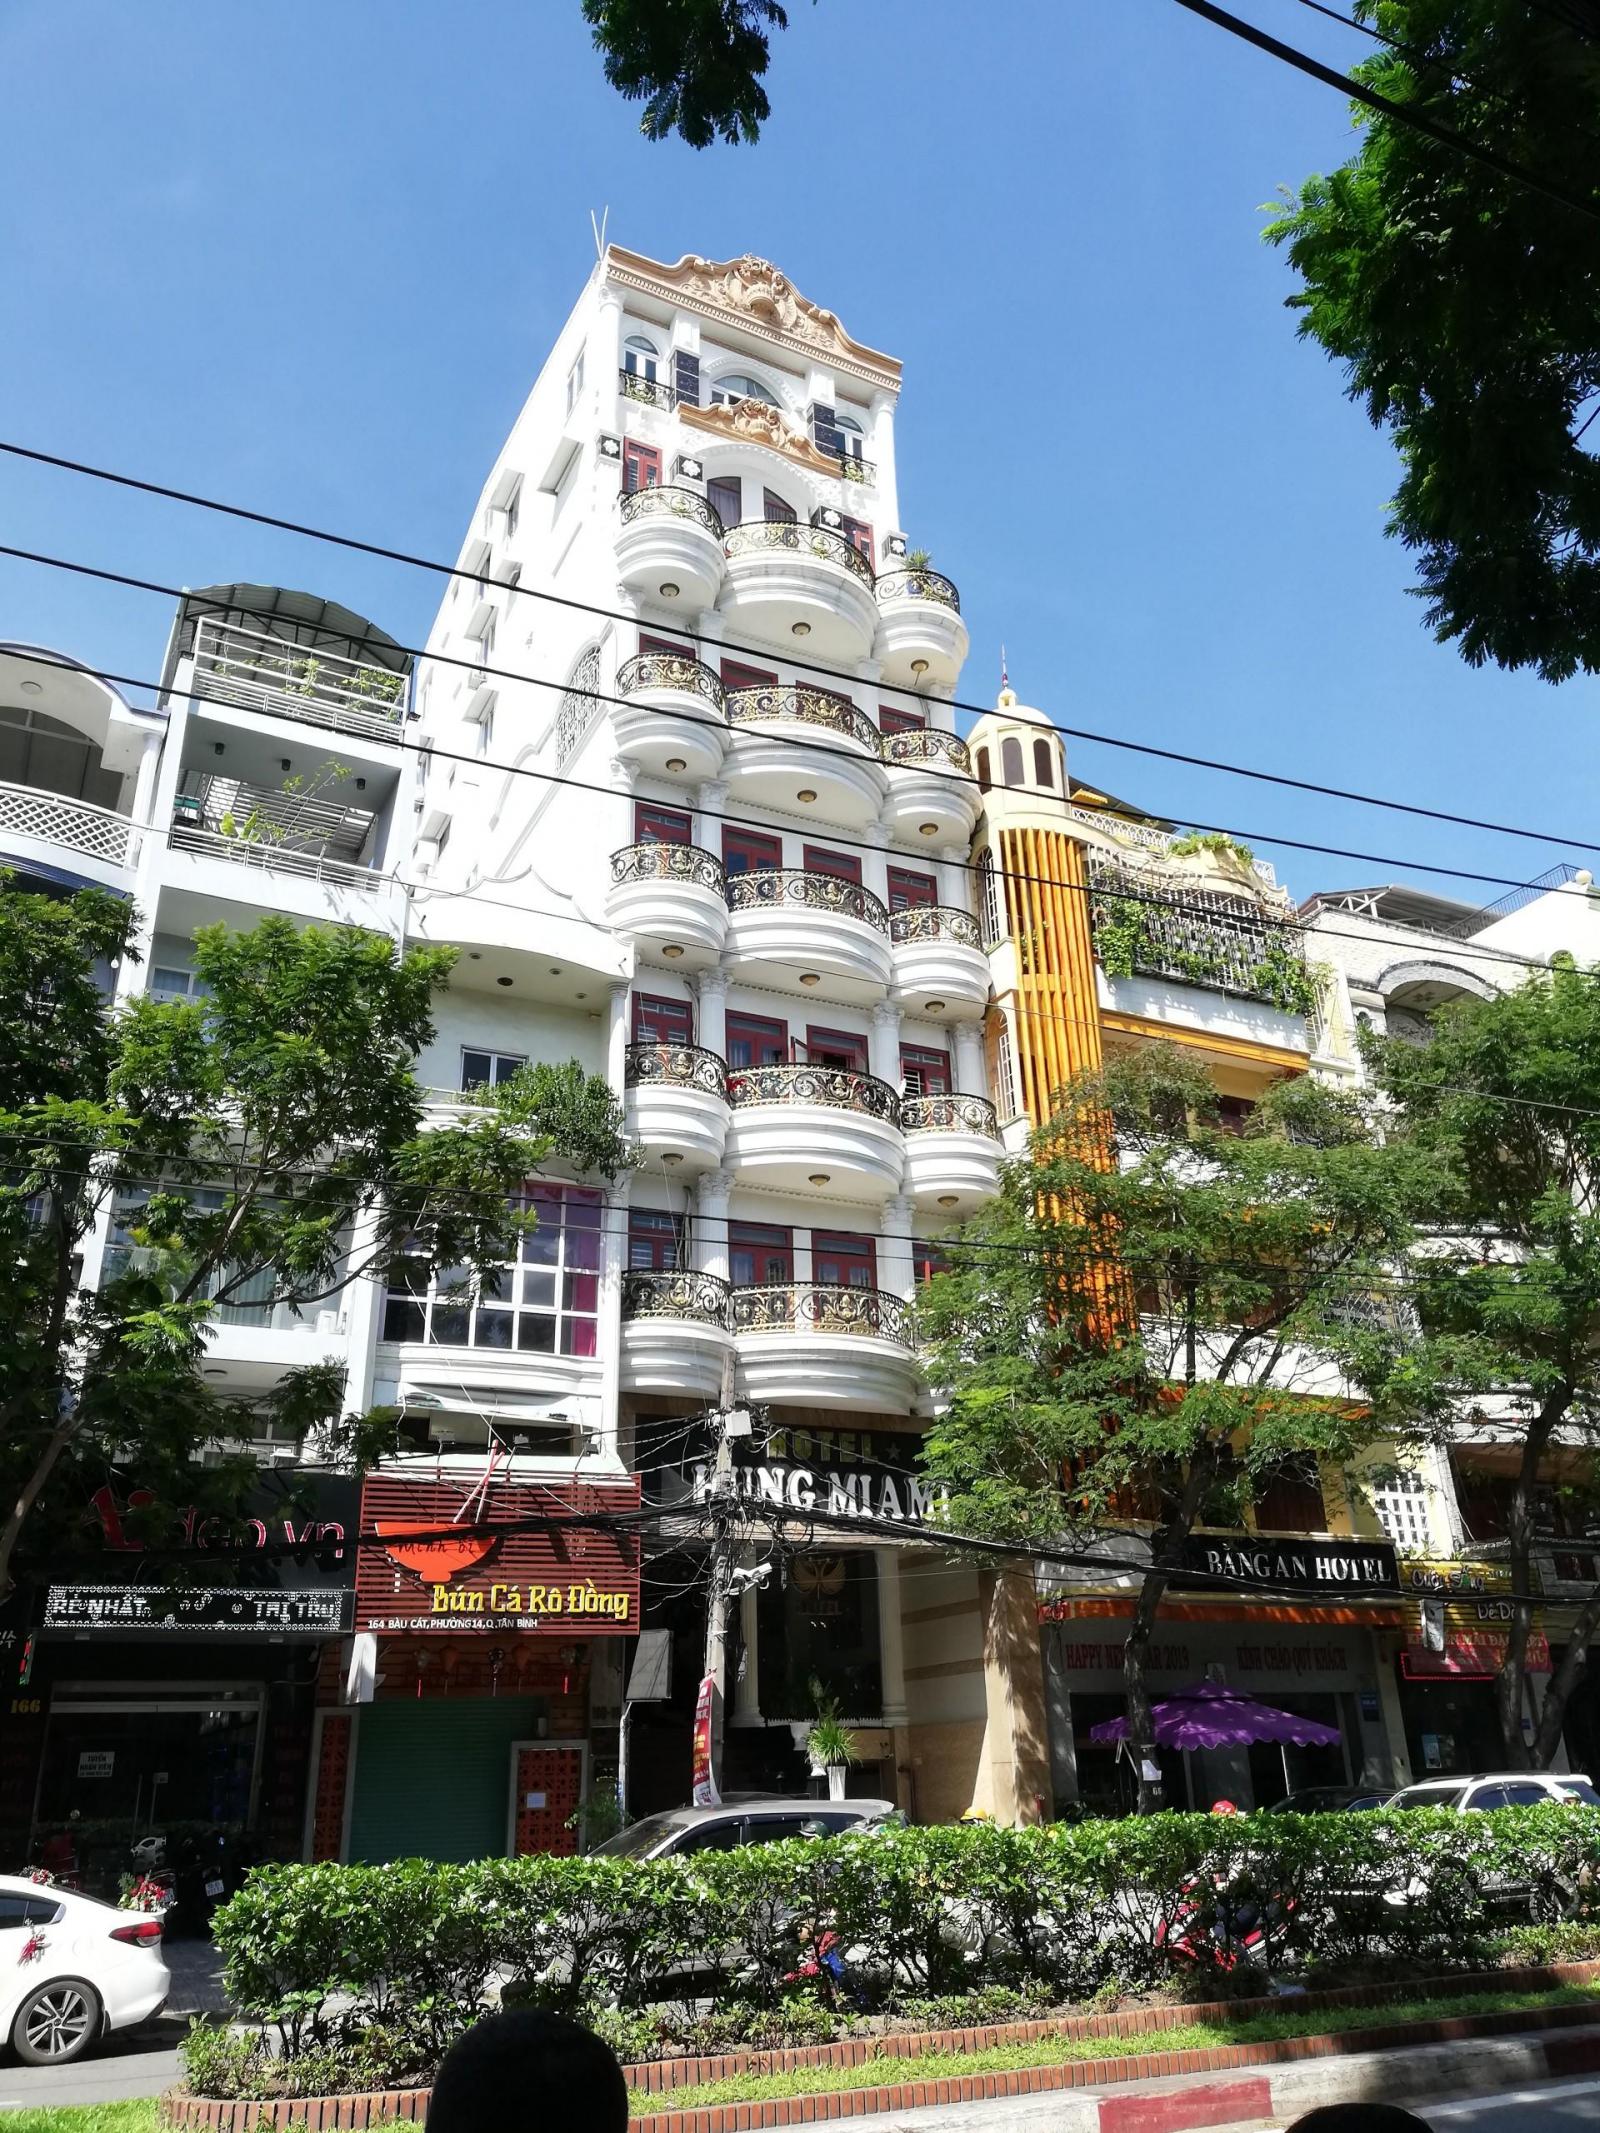 Bán nhà 2 mặt tiền đường Cộng Hoà quận Tân Bình, diện tích 6x24m, giá 30 tỷ 500 triệu